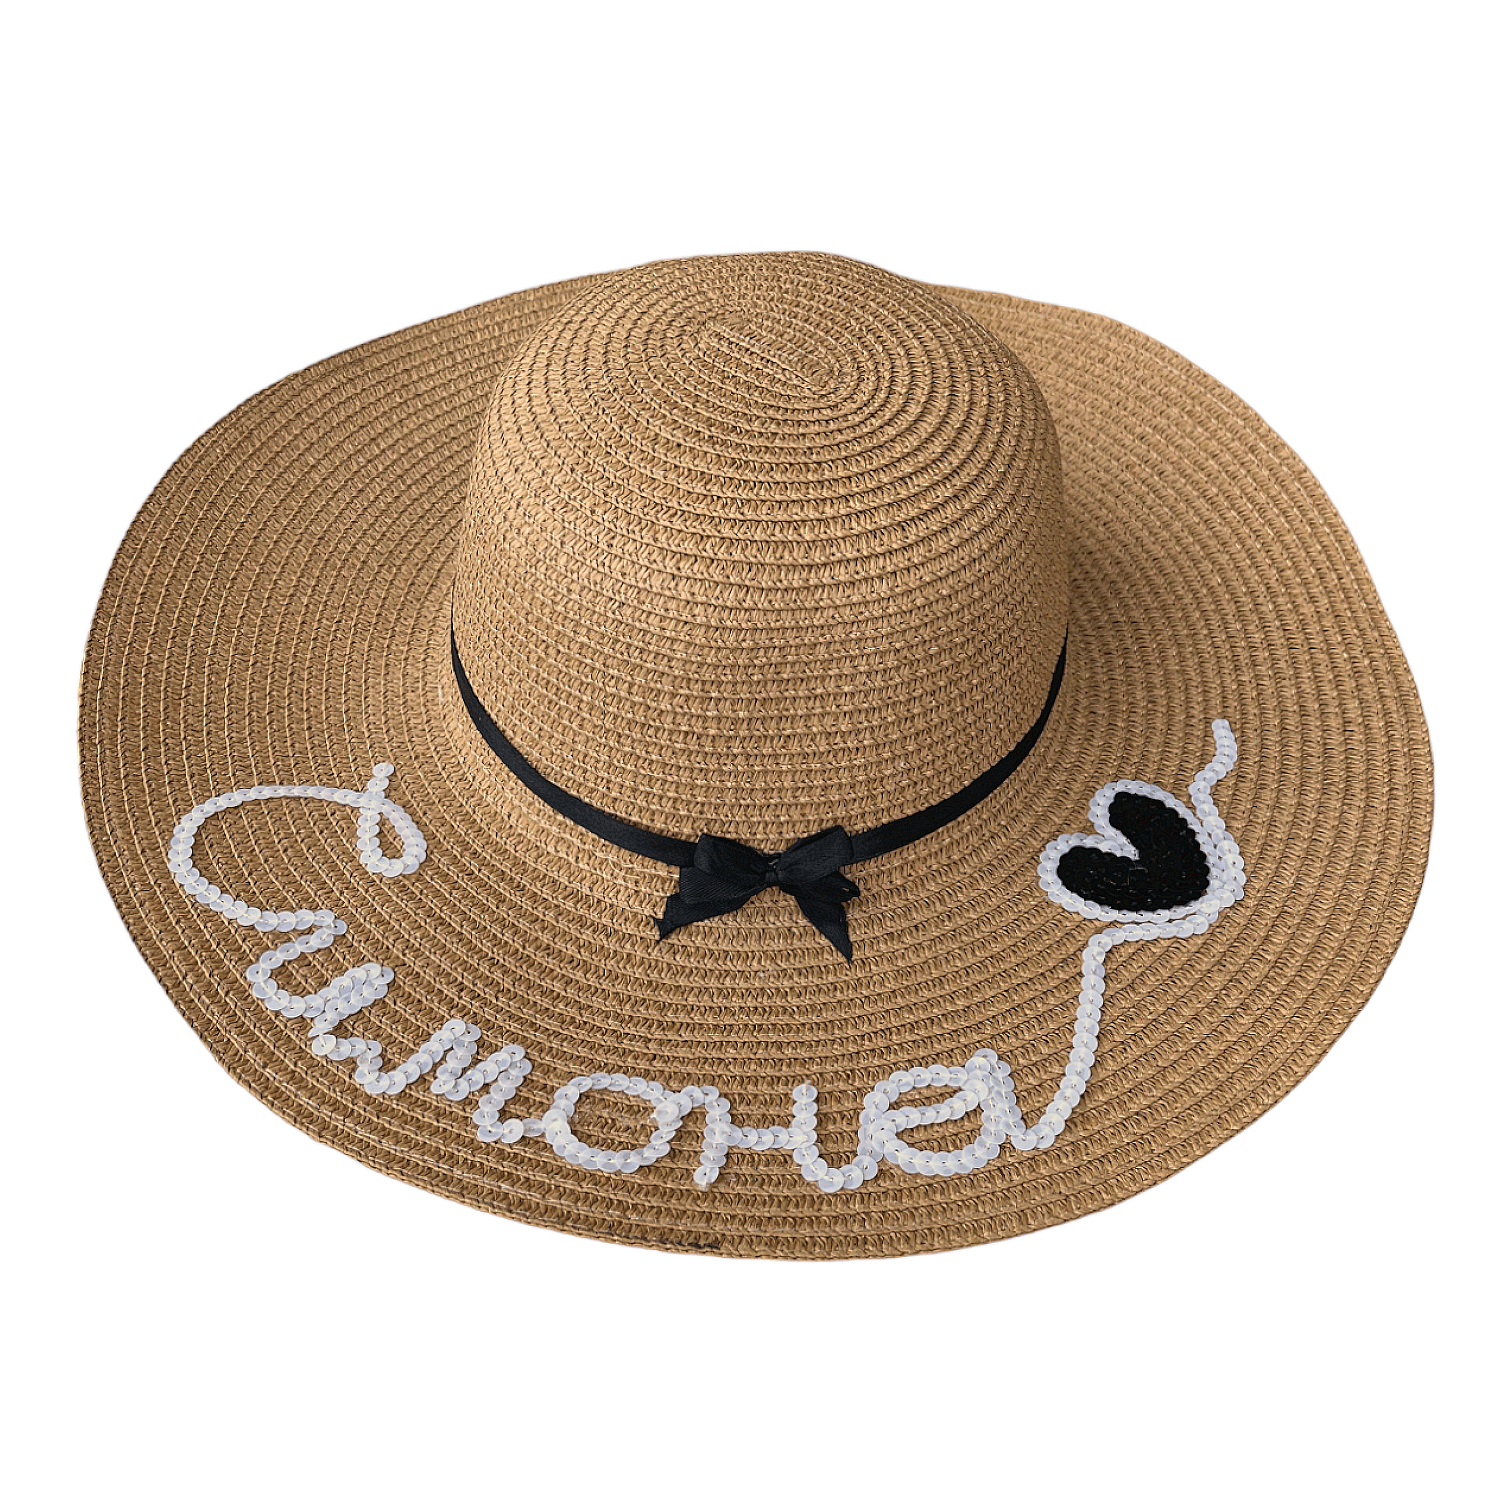 Ръчно декорирана плетена шапка с надпис 'Simona' и сърце